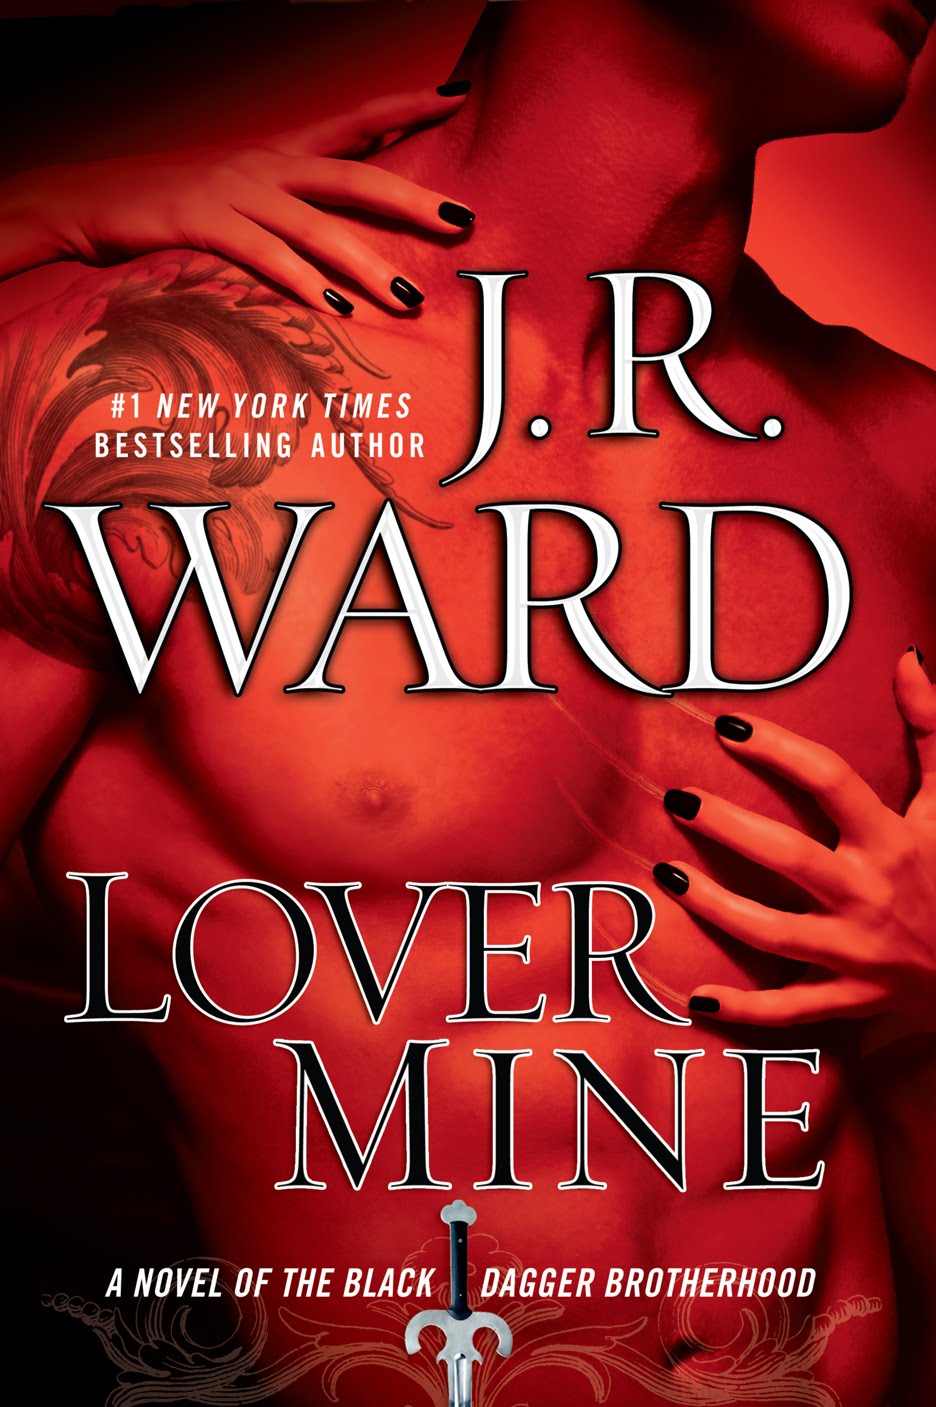 Книга осма - Единствена любов (Lover Mine)  - Page 7 BDB8-Lover+Mine